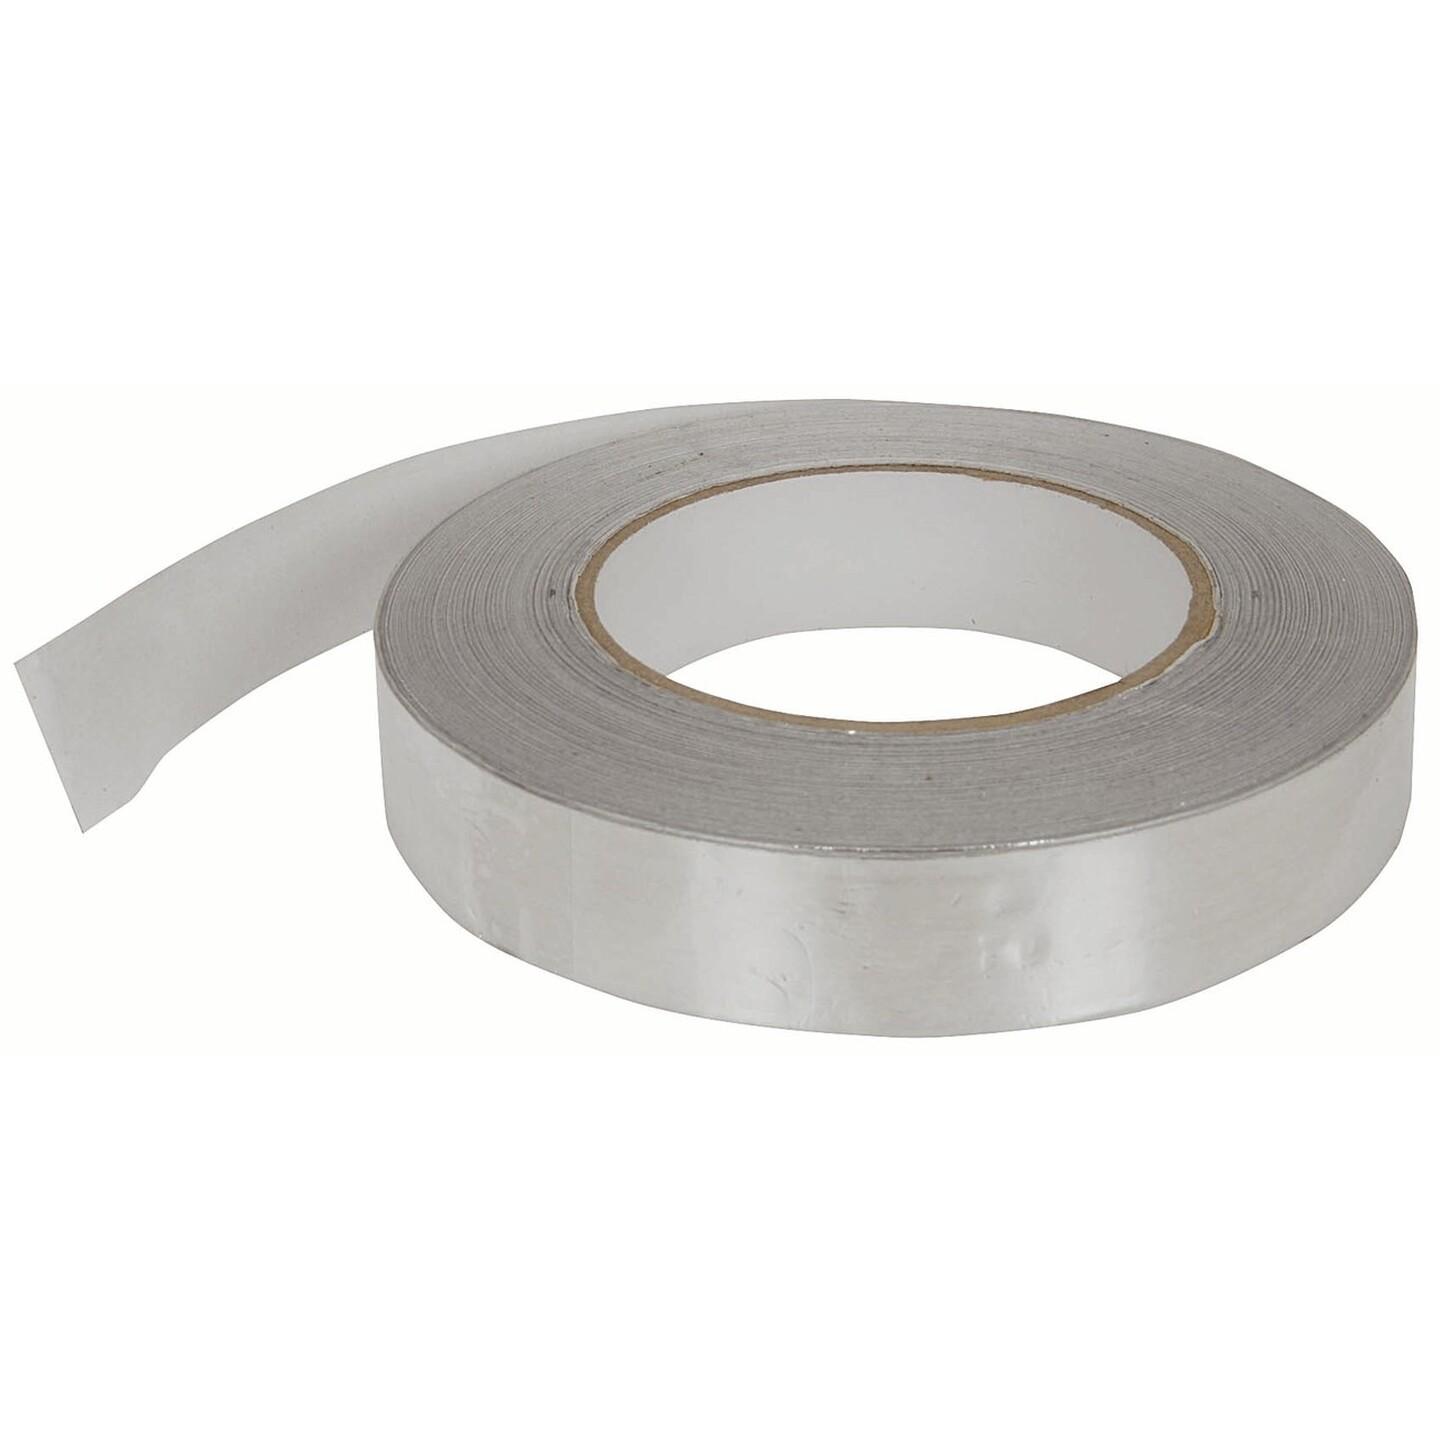 Aluminium Foil Tape - 25mm